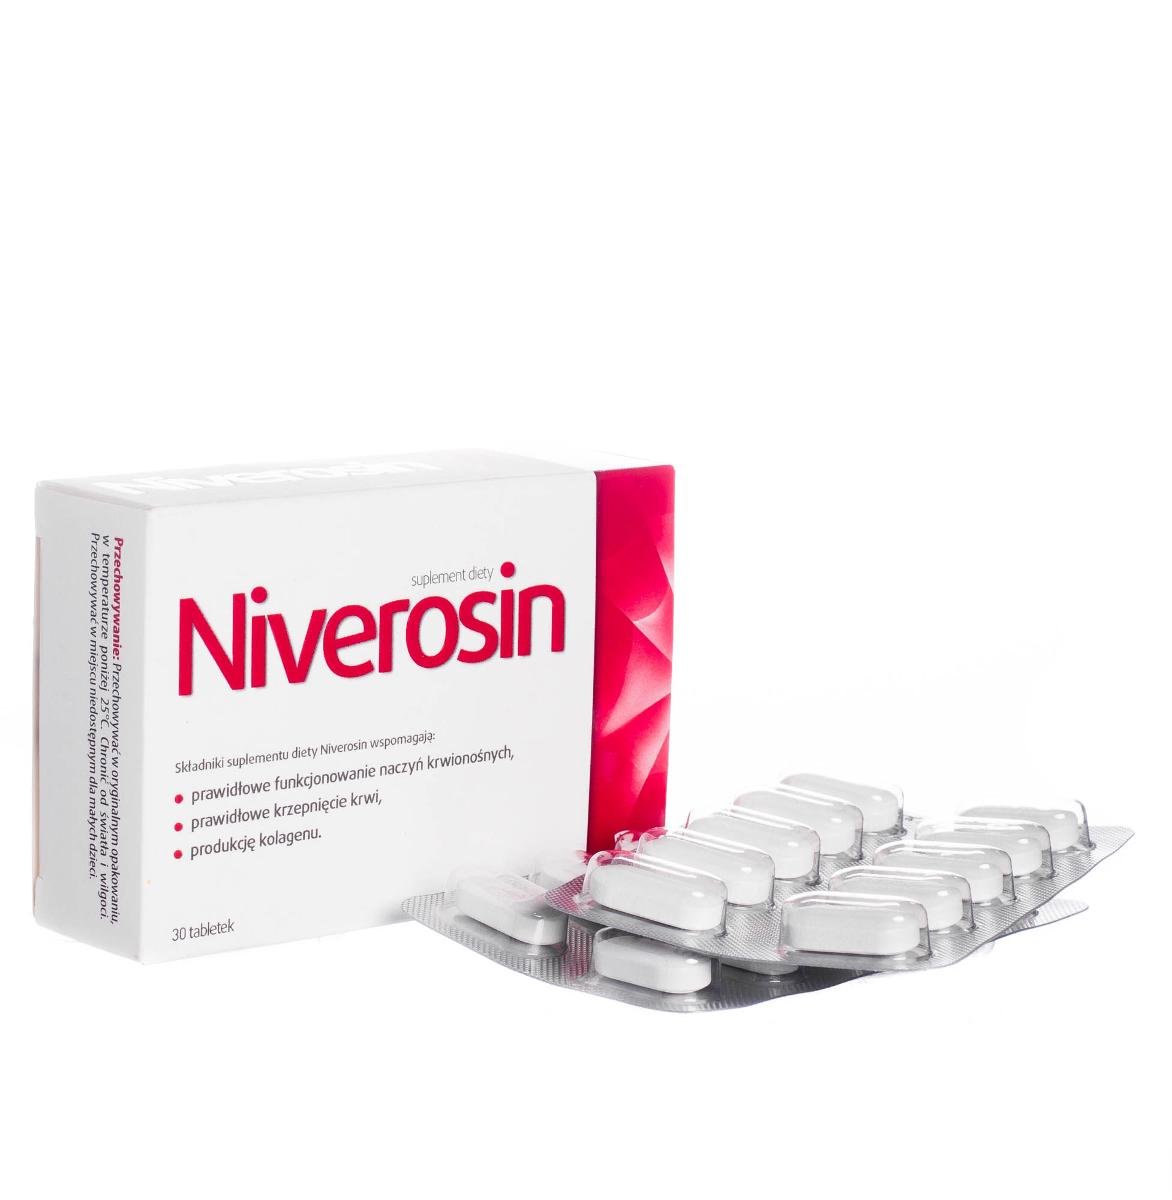 Фото - Вітаміни й мінерали Aflofarm Suplement diety, , Niverosin, 30 tabletek 